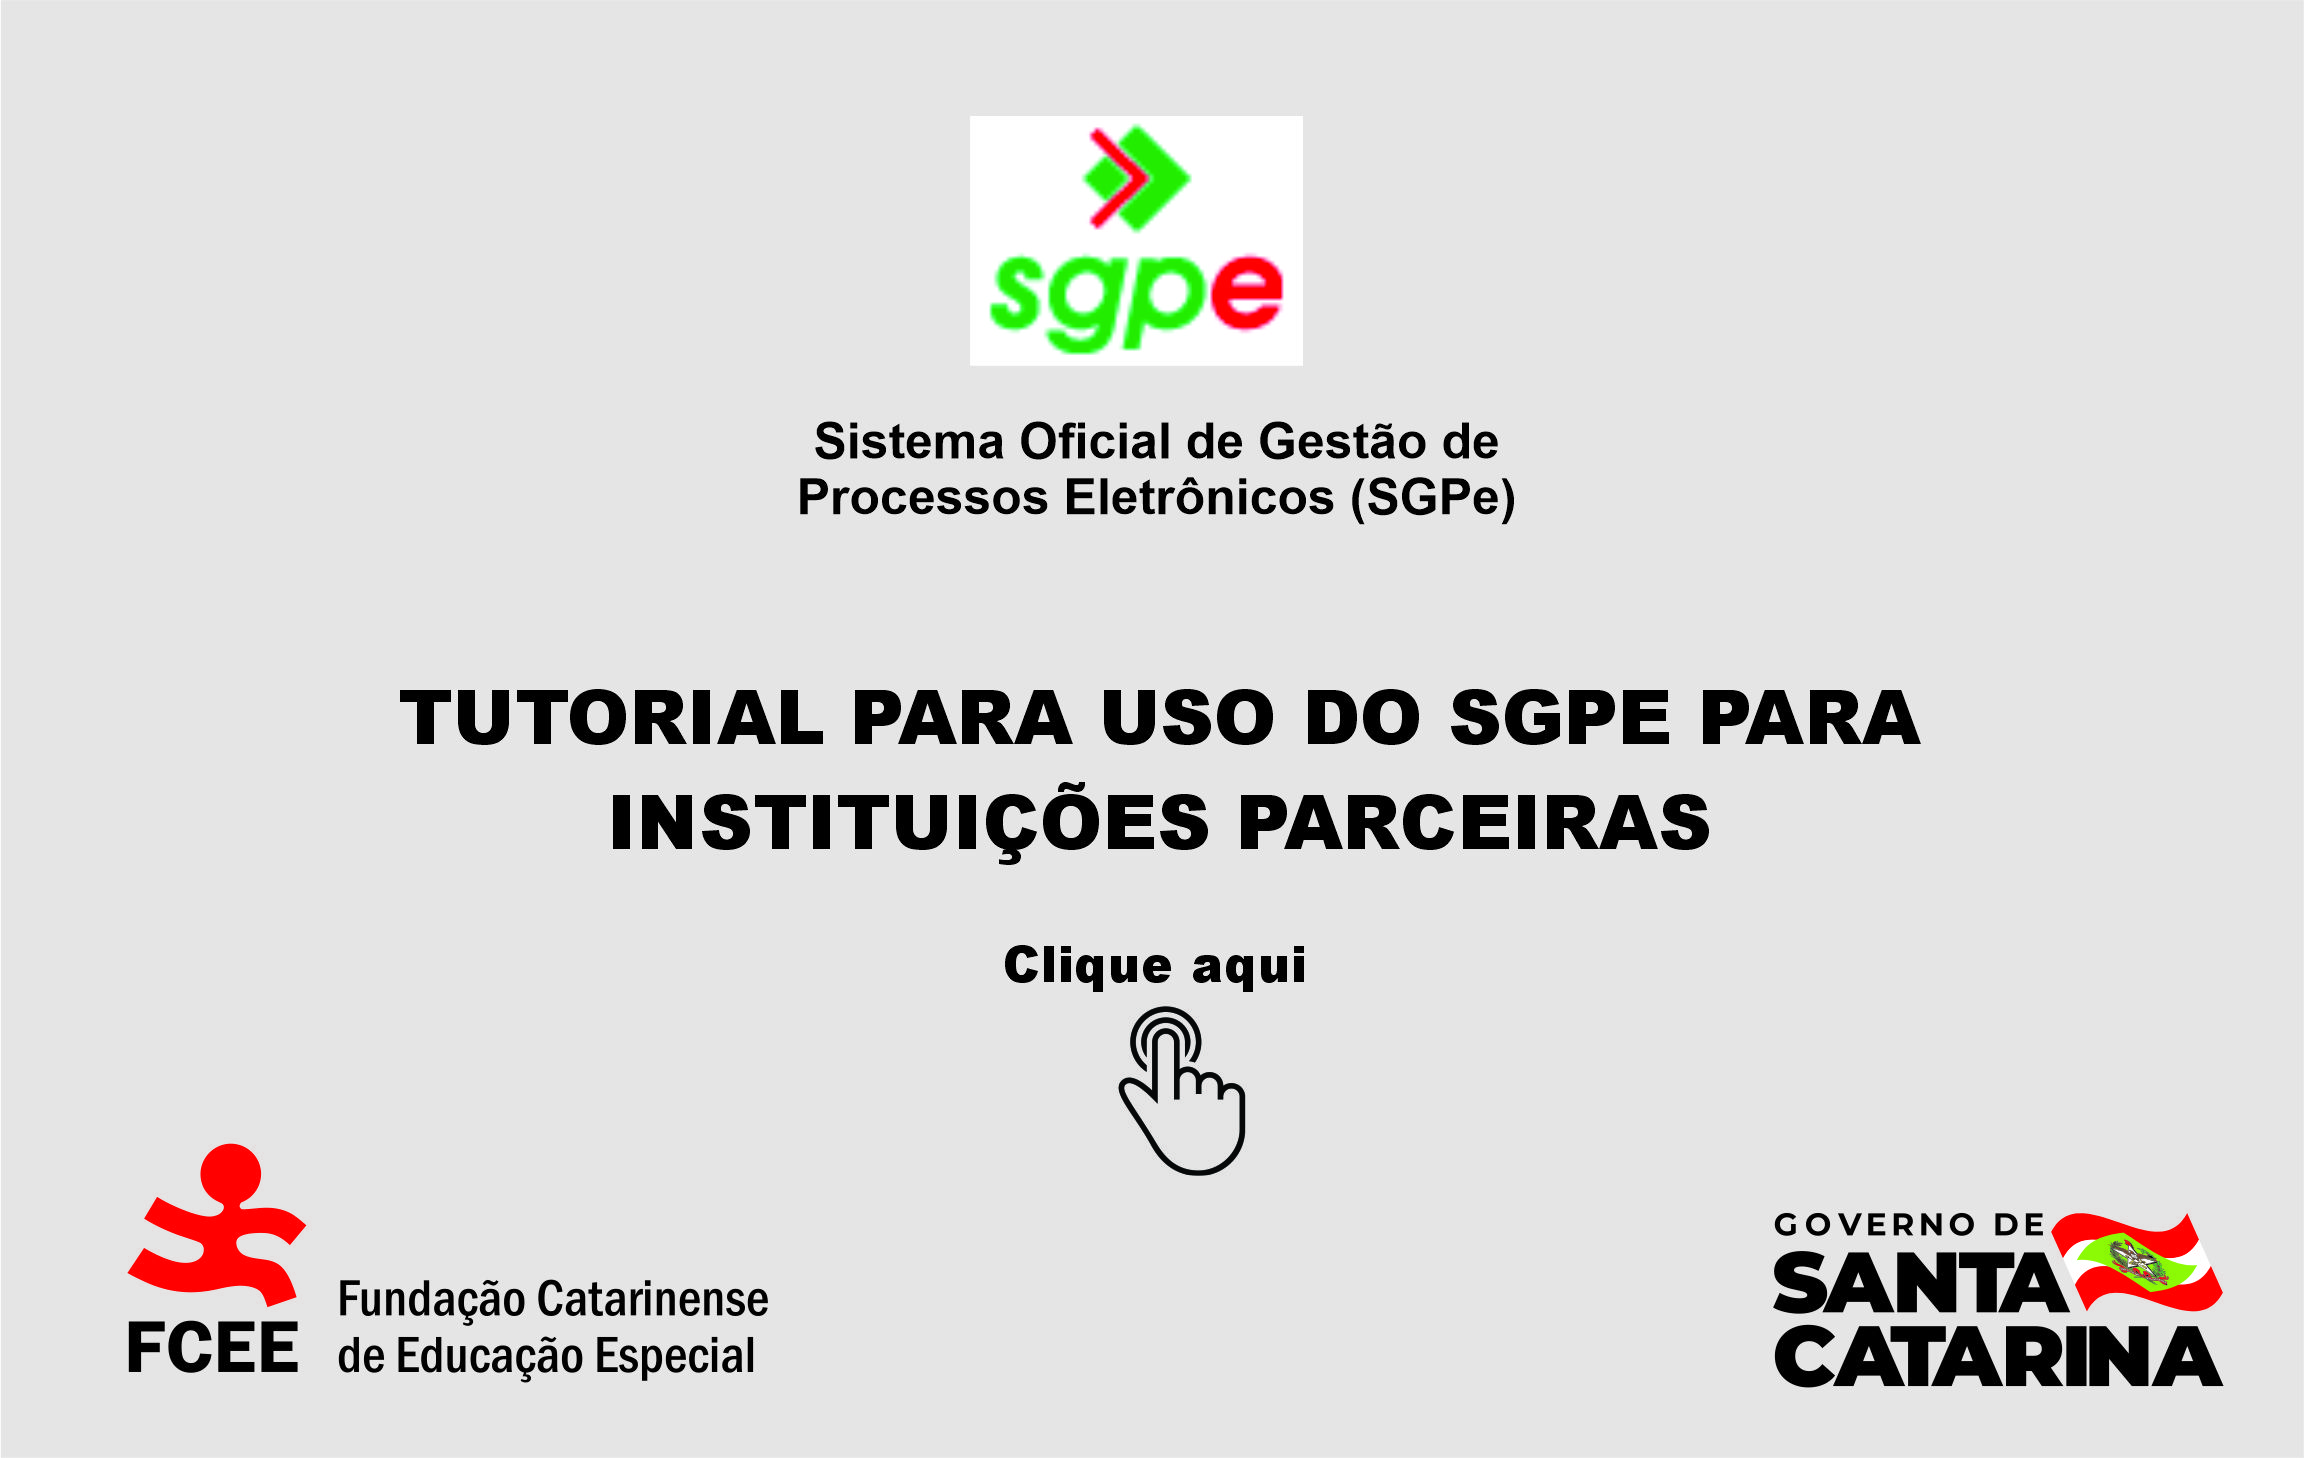 FCEE publica tutorial para uso do SGPE por instituições parceiras